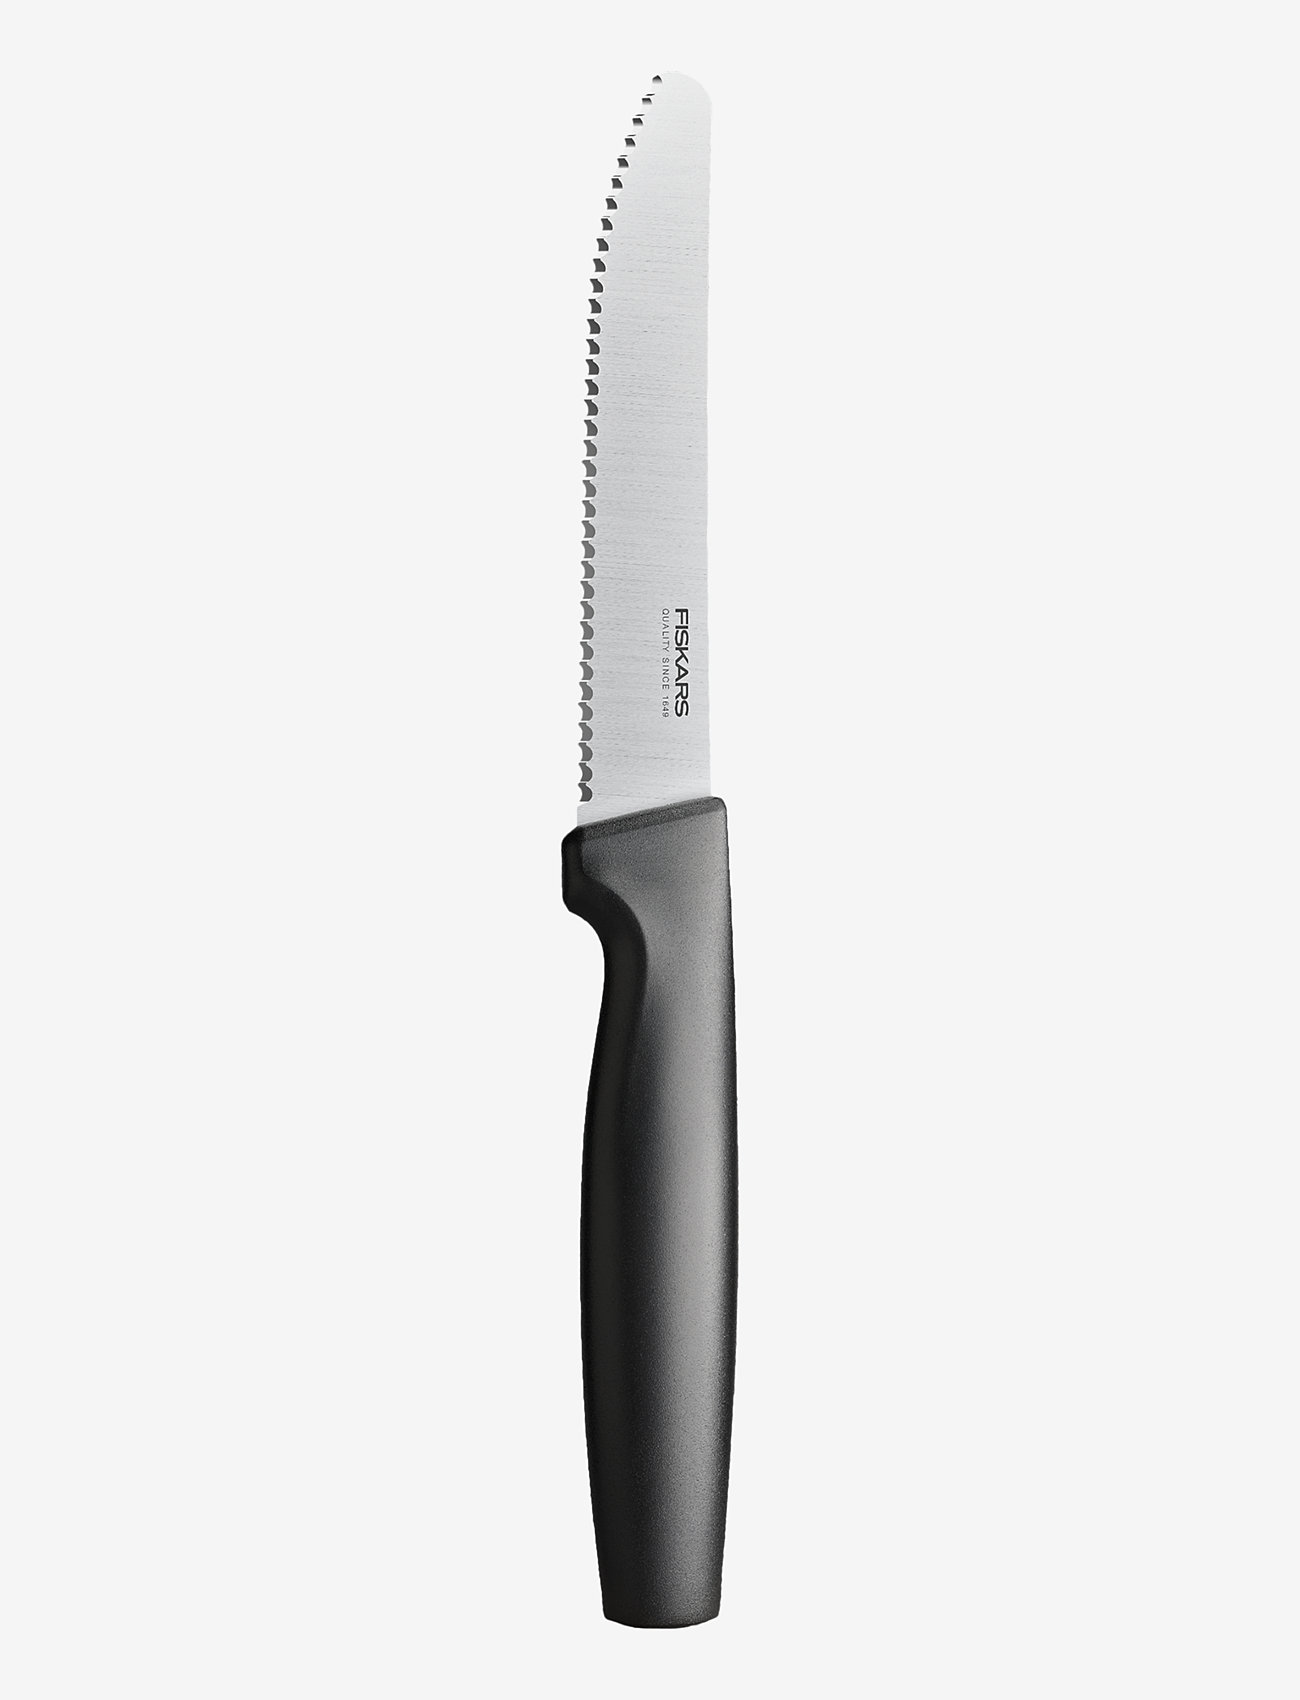 Fiskars - FF bordsknivset, 3 stycken - lägsta priserna - black - 1